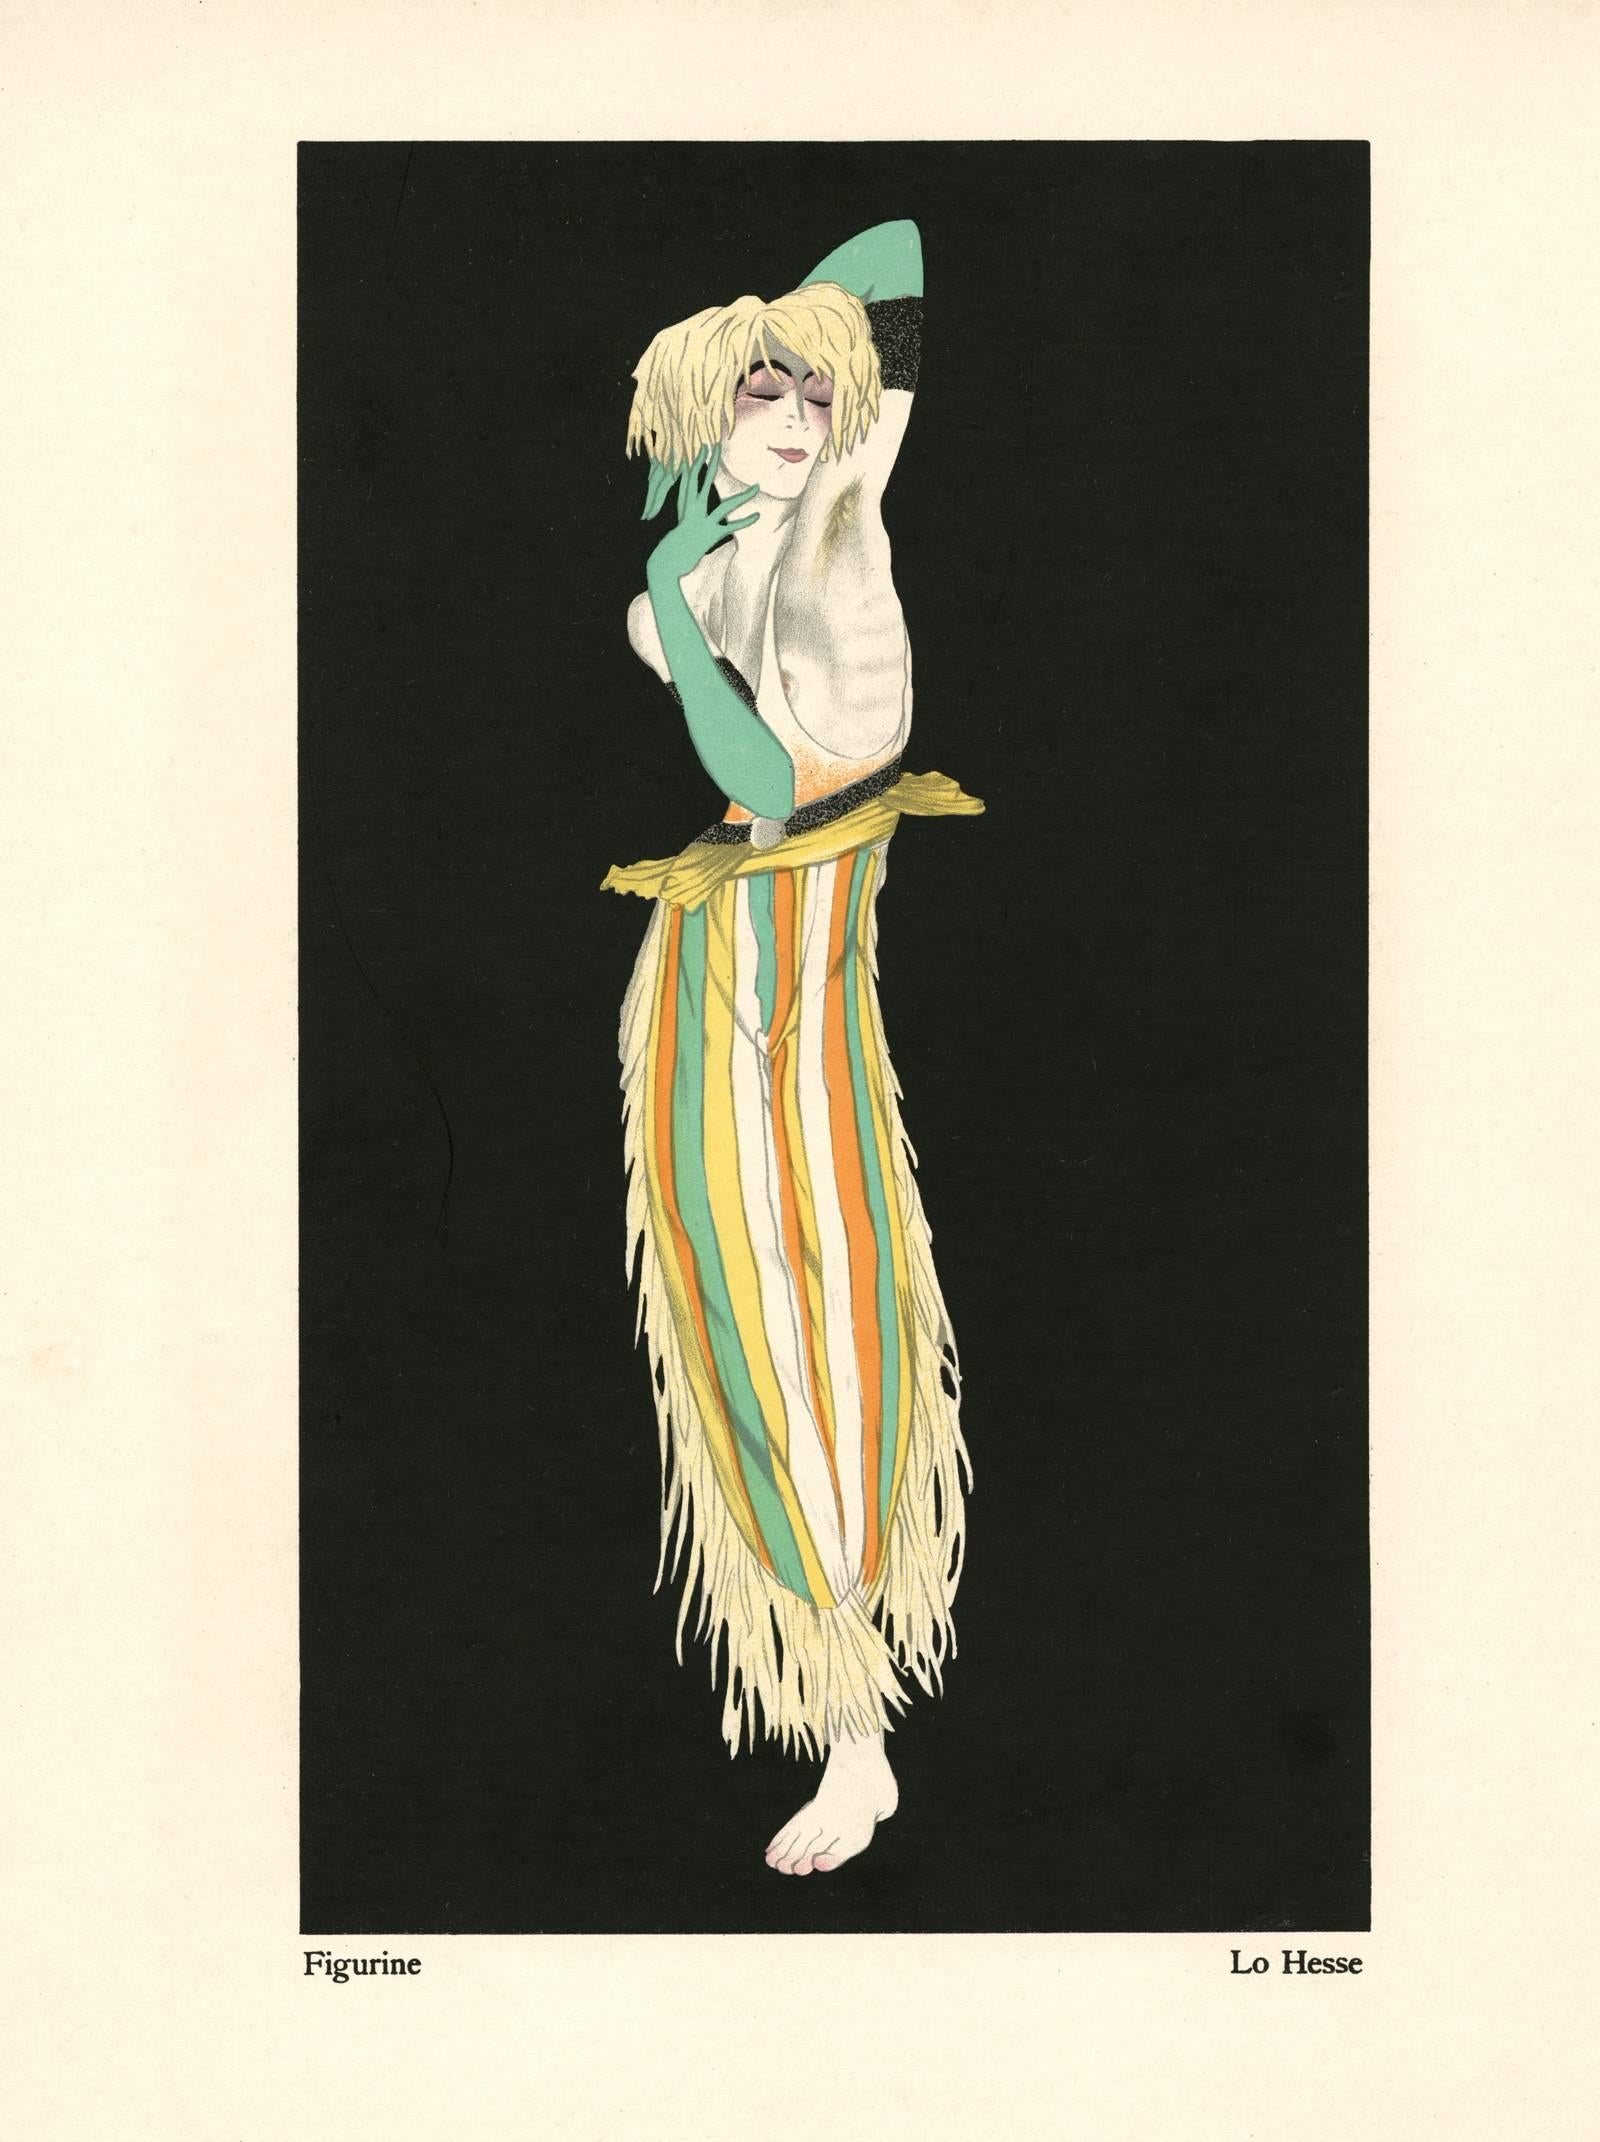 Walter Schnackenberg Figurative Print - Kostume, Plakate, und Dekorationen, "Lo Hesse"